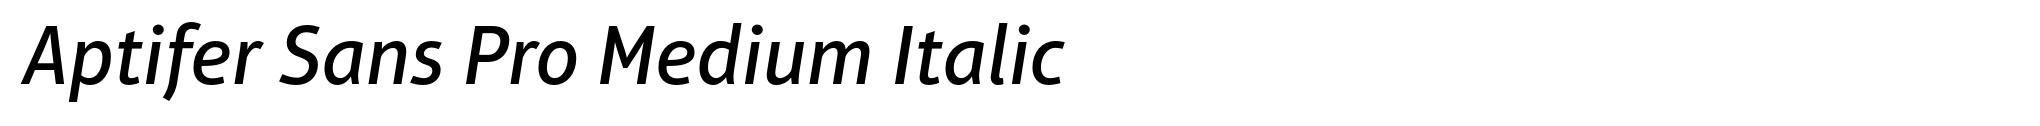 Aptifer Sans Pro Medium Italic image